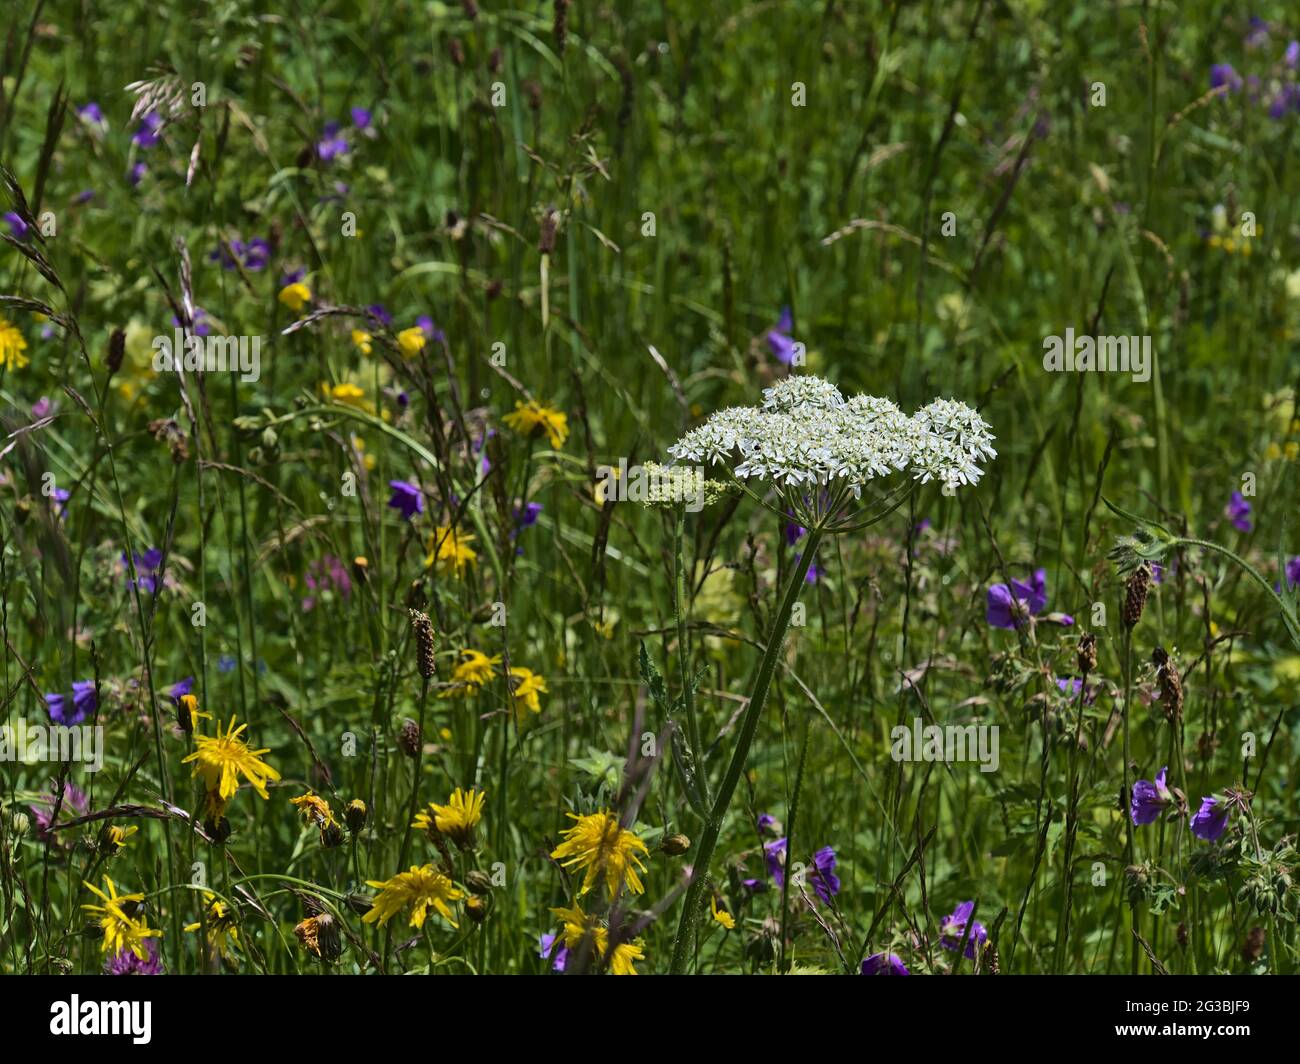 Bel prato fiorito con alghe (eracleum sphondylium) con fiori bianchi circondati da erba e fiori gialli e viola in tarda primavera. Foto Stock